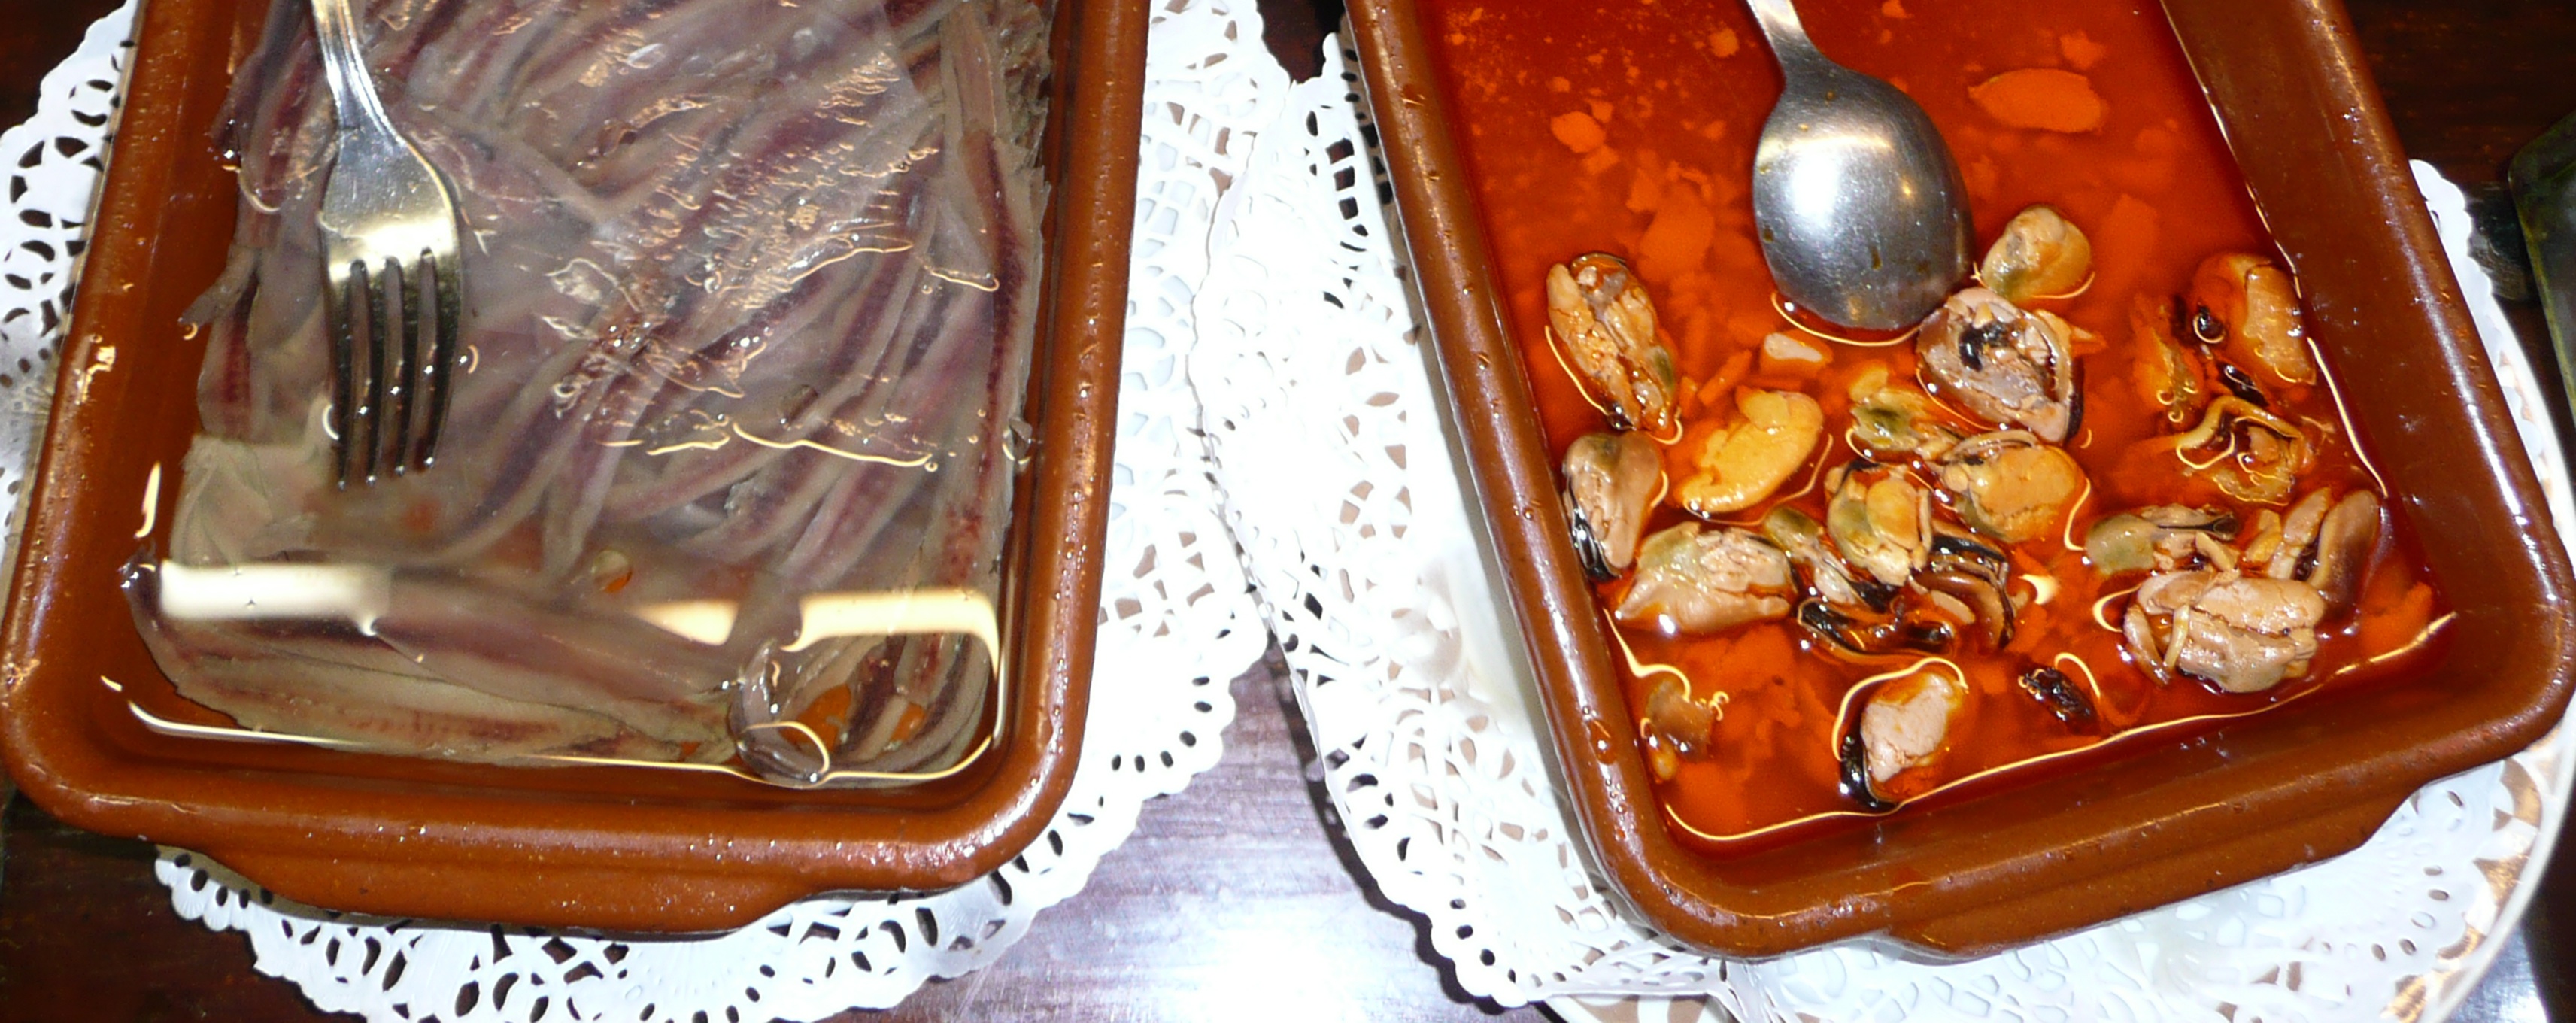 Sardiner och musslor - oumbärlig barmat 2.